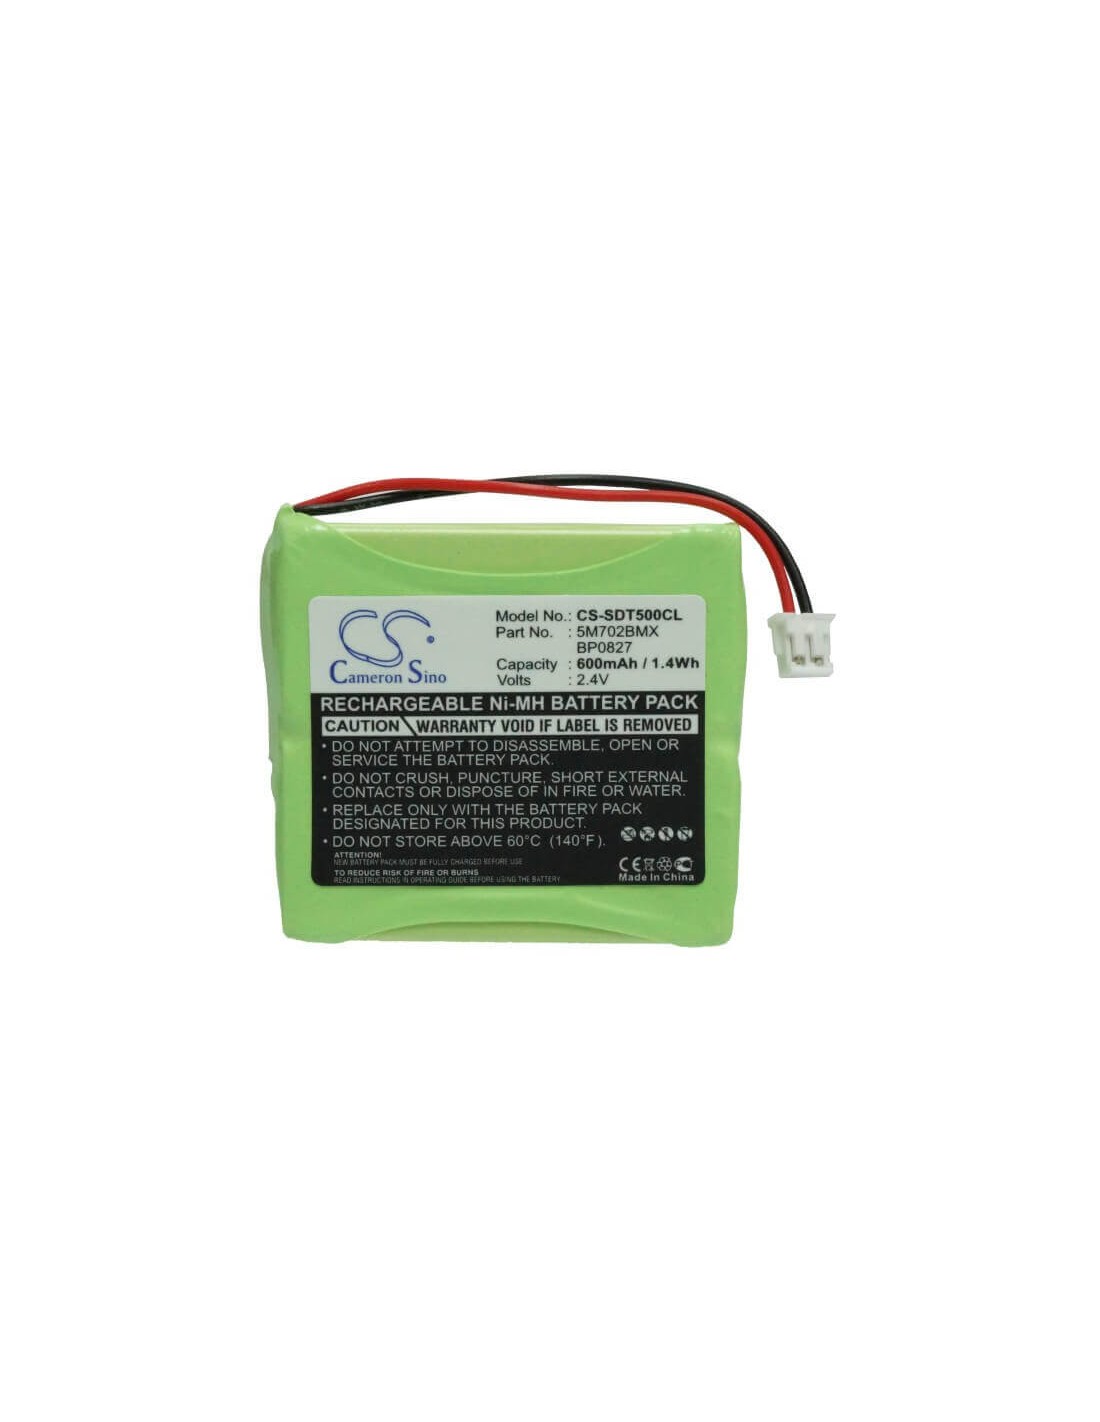 Battery for Detewe, Style 250 2.4V, 600mAh - 1.44Wh